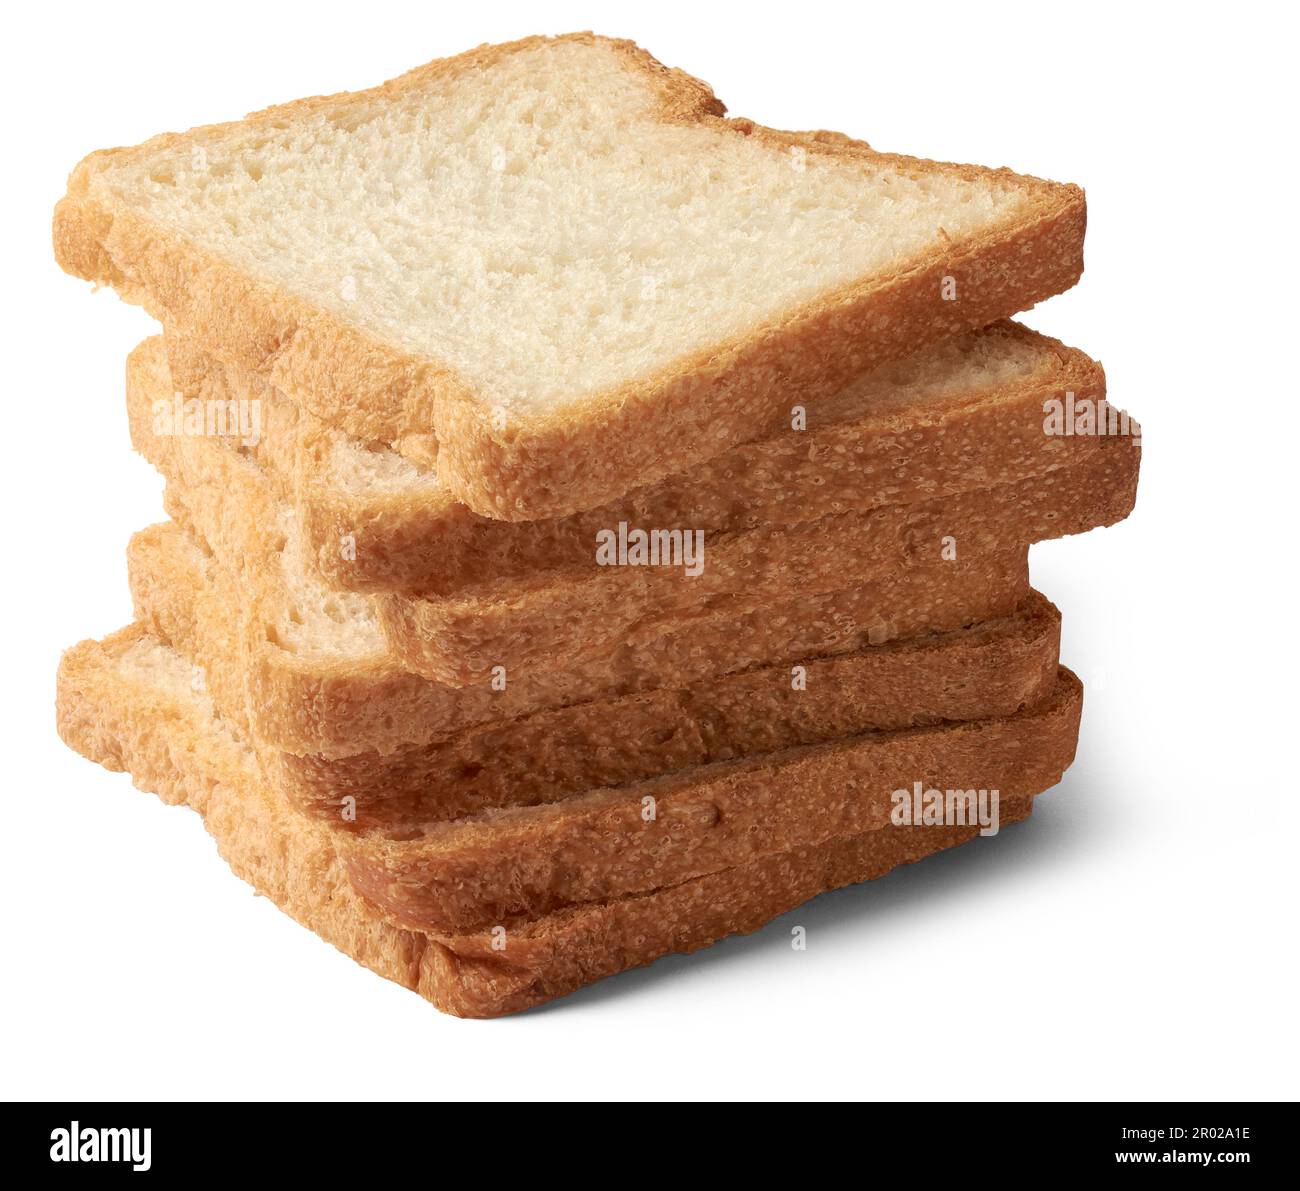 pane bianco a fette isolato su sfondo bianco, cibo popolare in molte culture e utilizzato per la preparazione di panini, toast, e altri piatti, più leggero Foto Stock